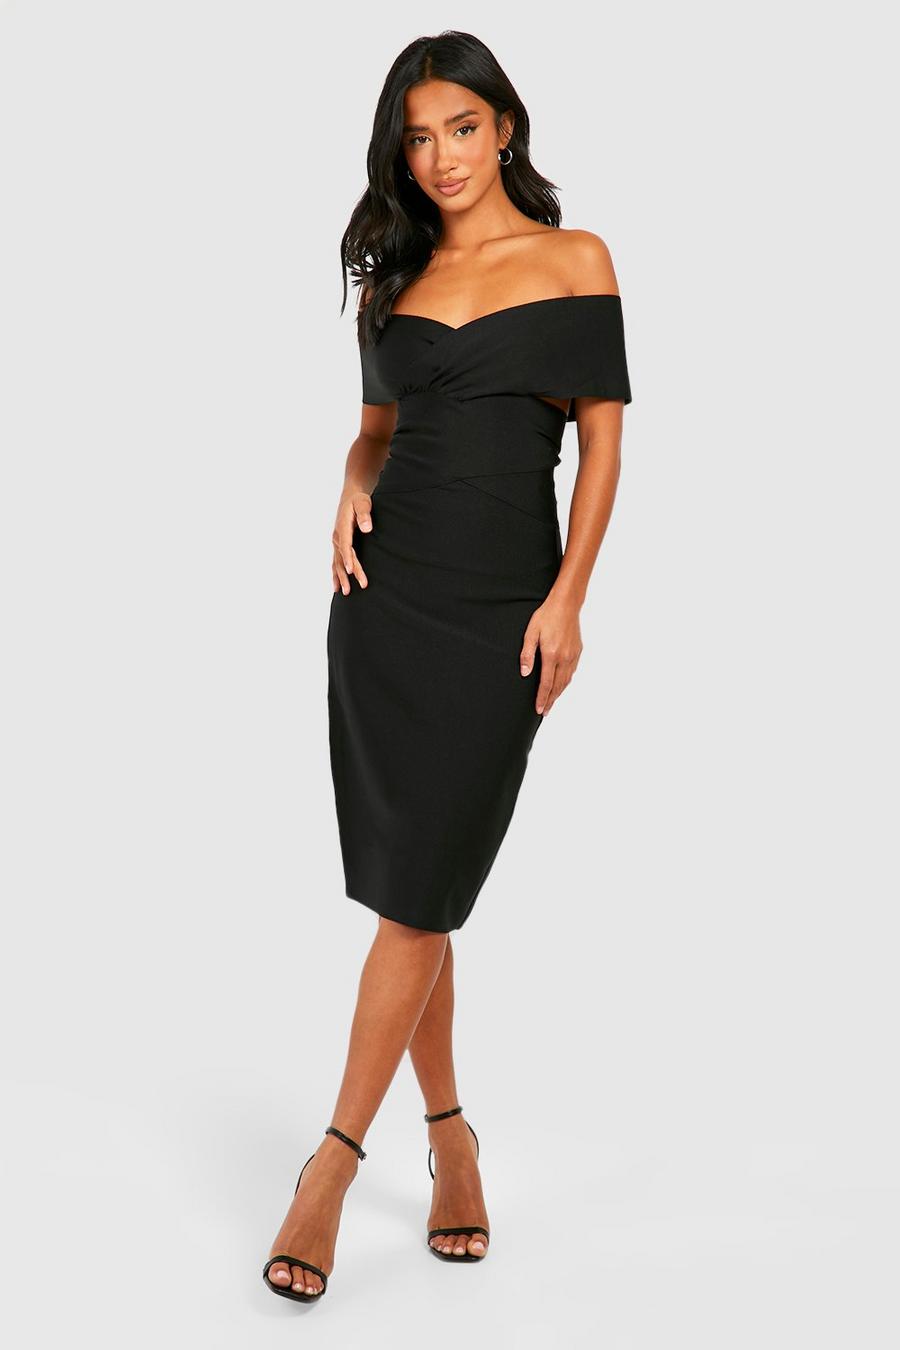 Black black sequined strapless dress image number 1